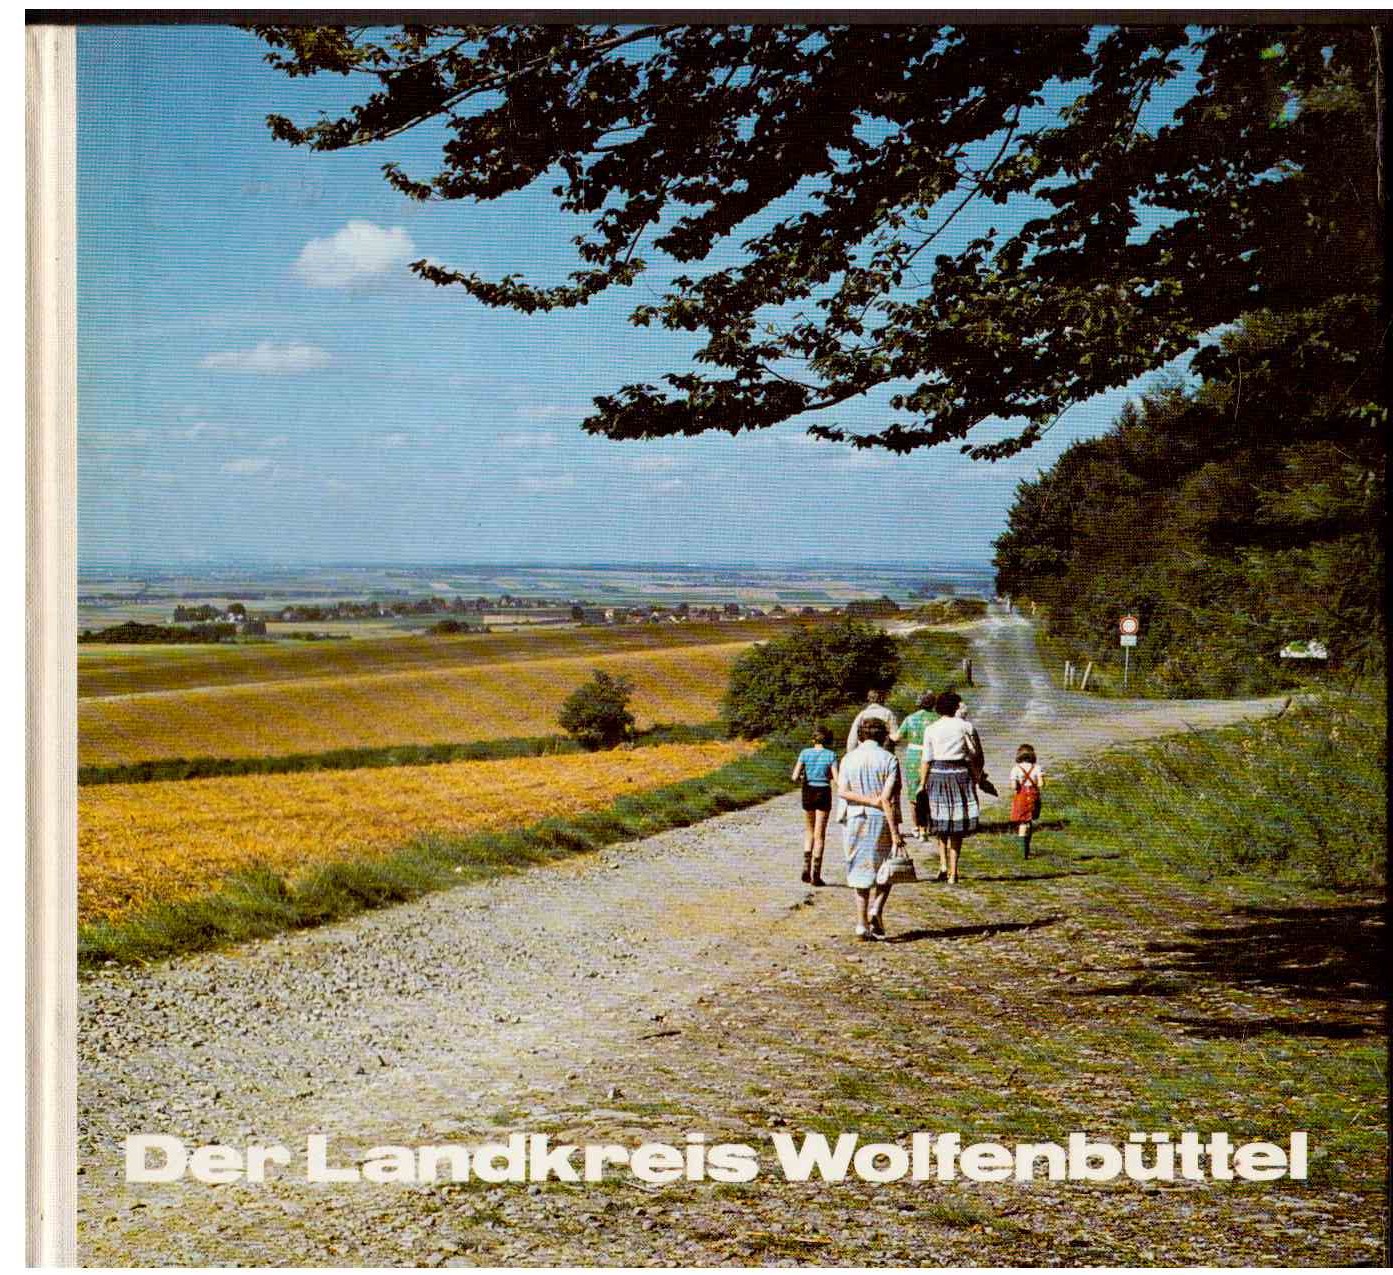 Der Landkreis Wolfenbüttel.